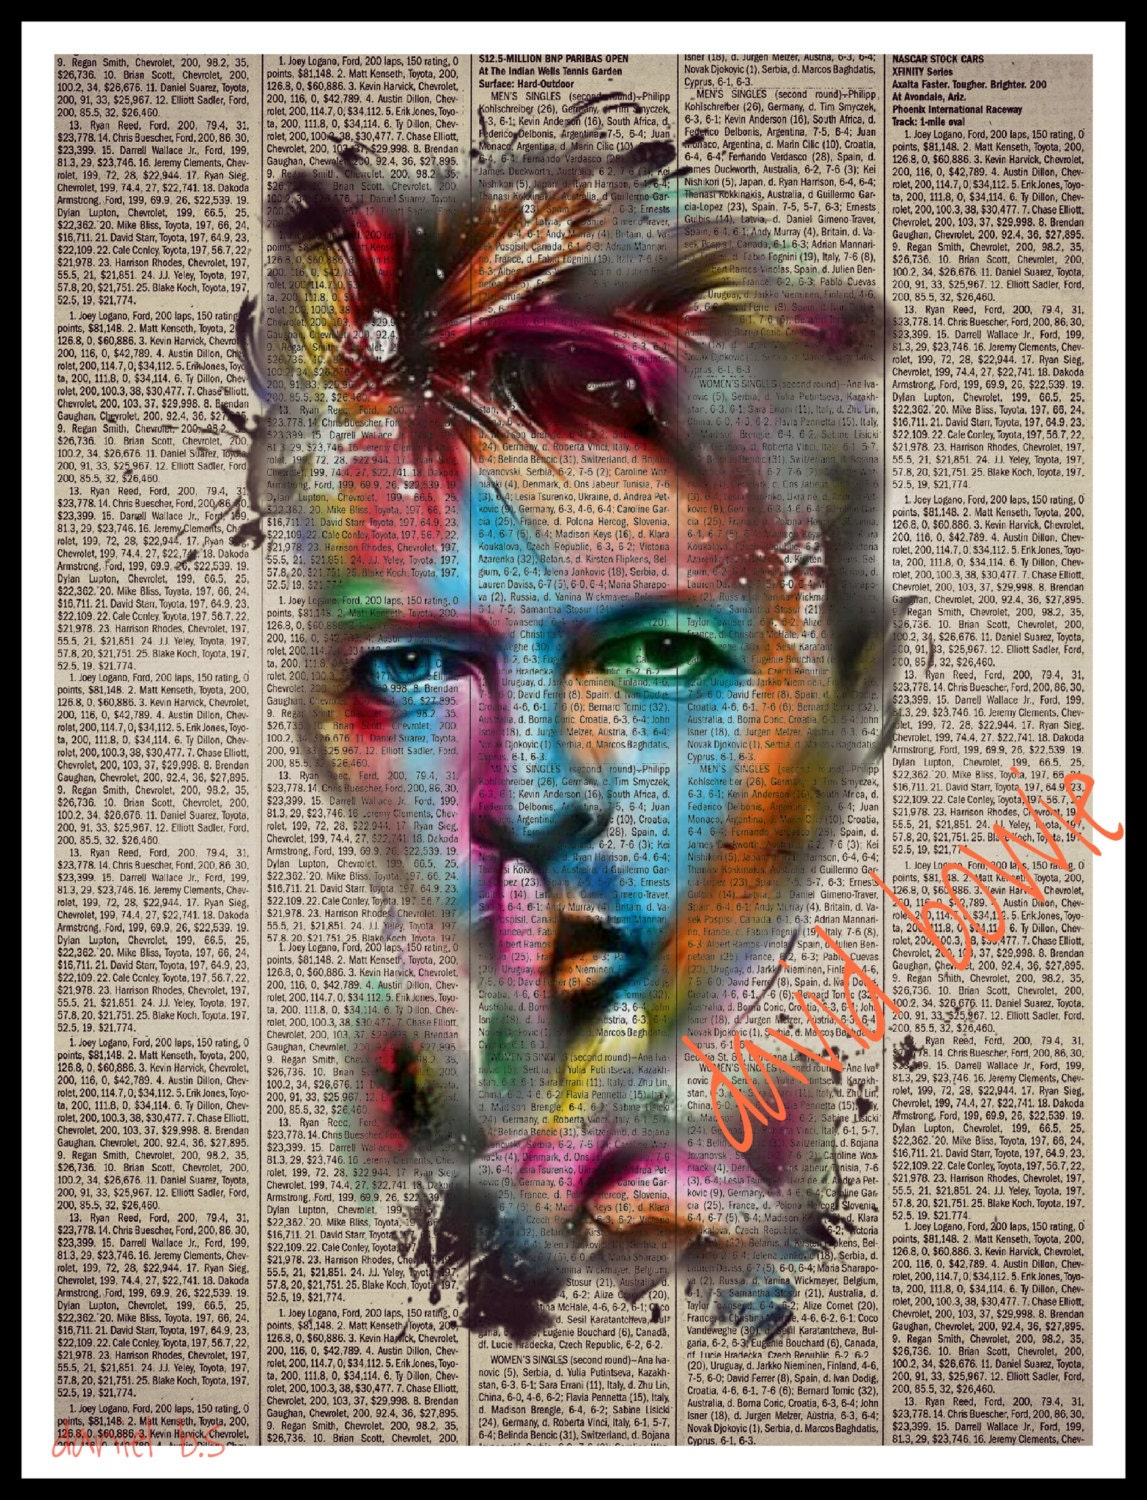 David Bowie Pop Art David Bowie Pop Art Portrait 3827